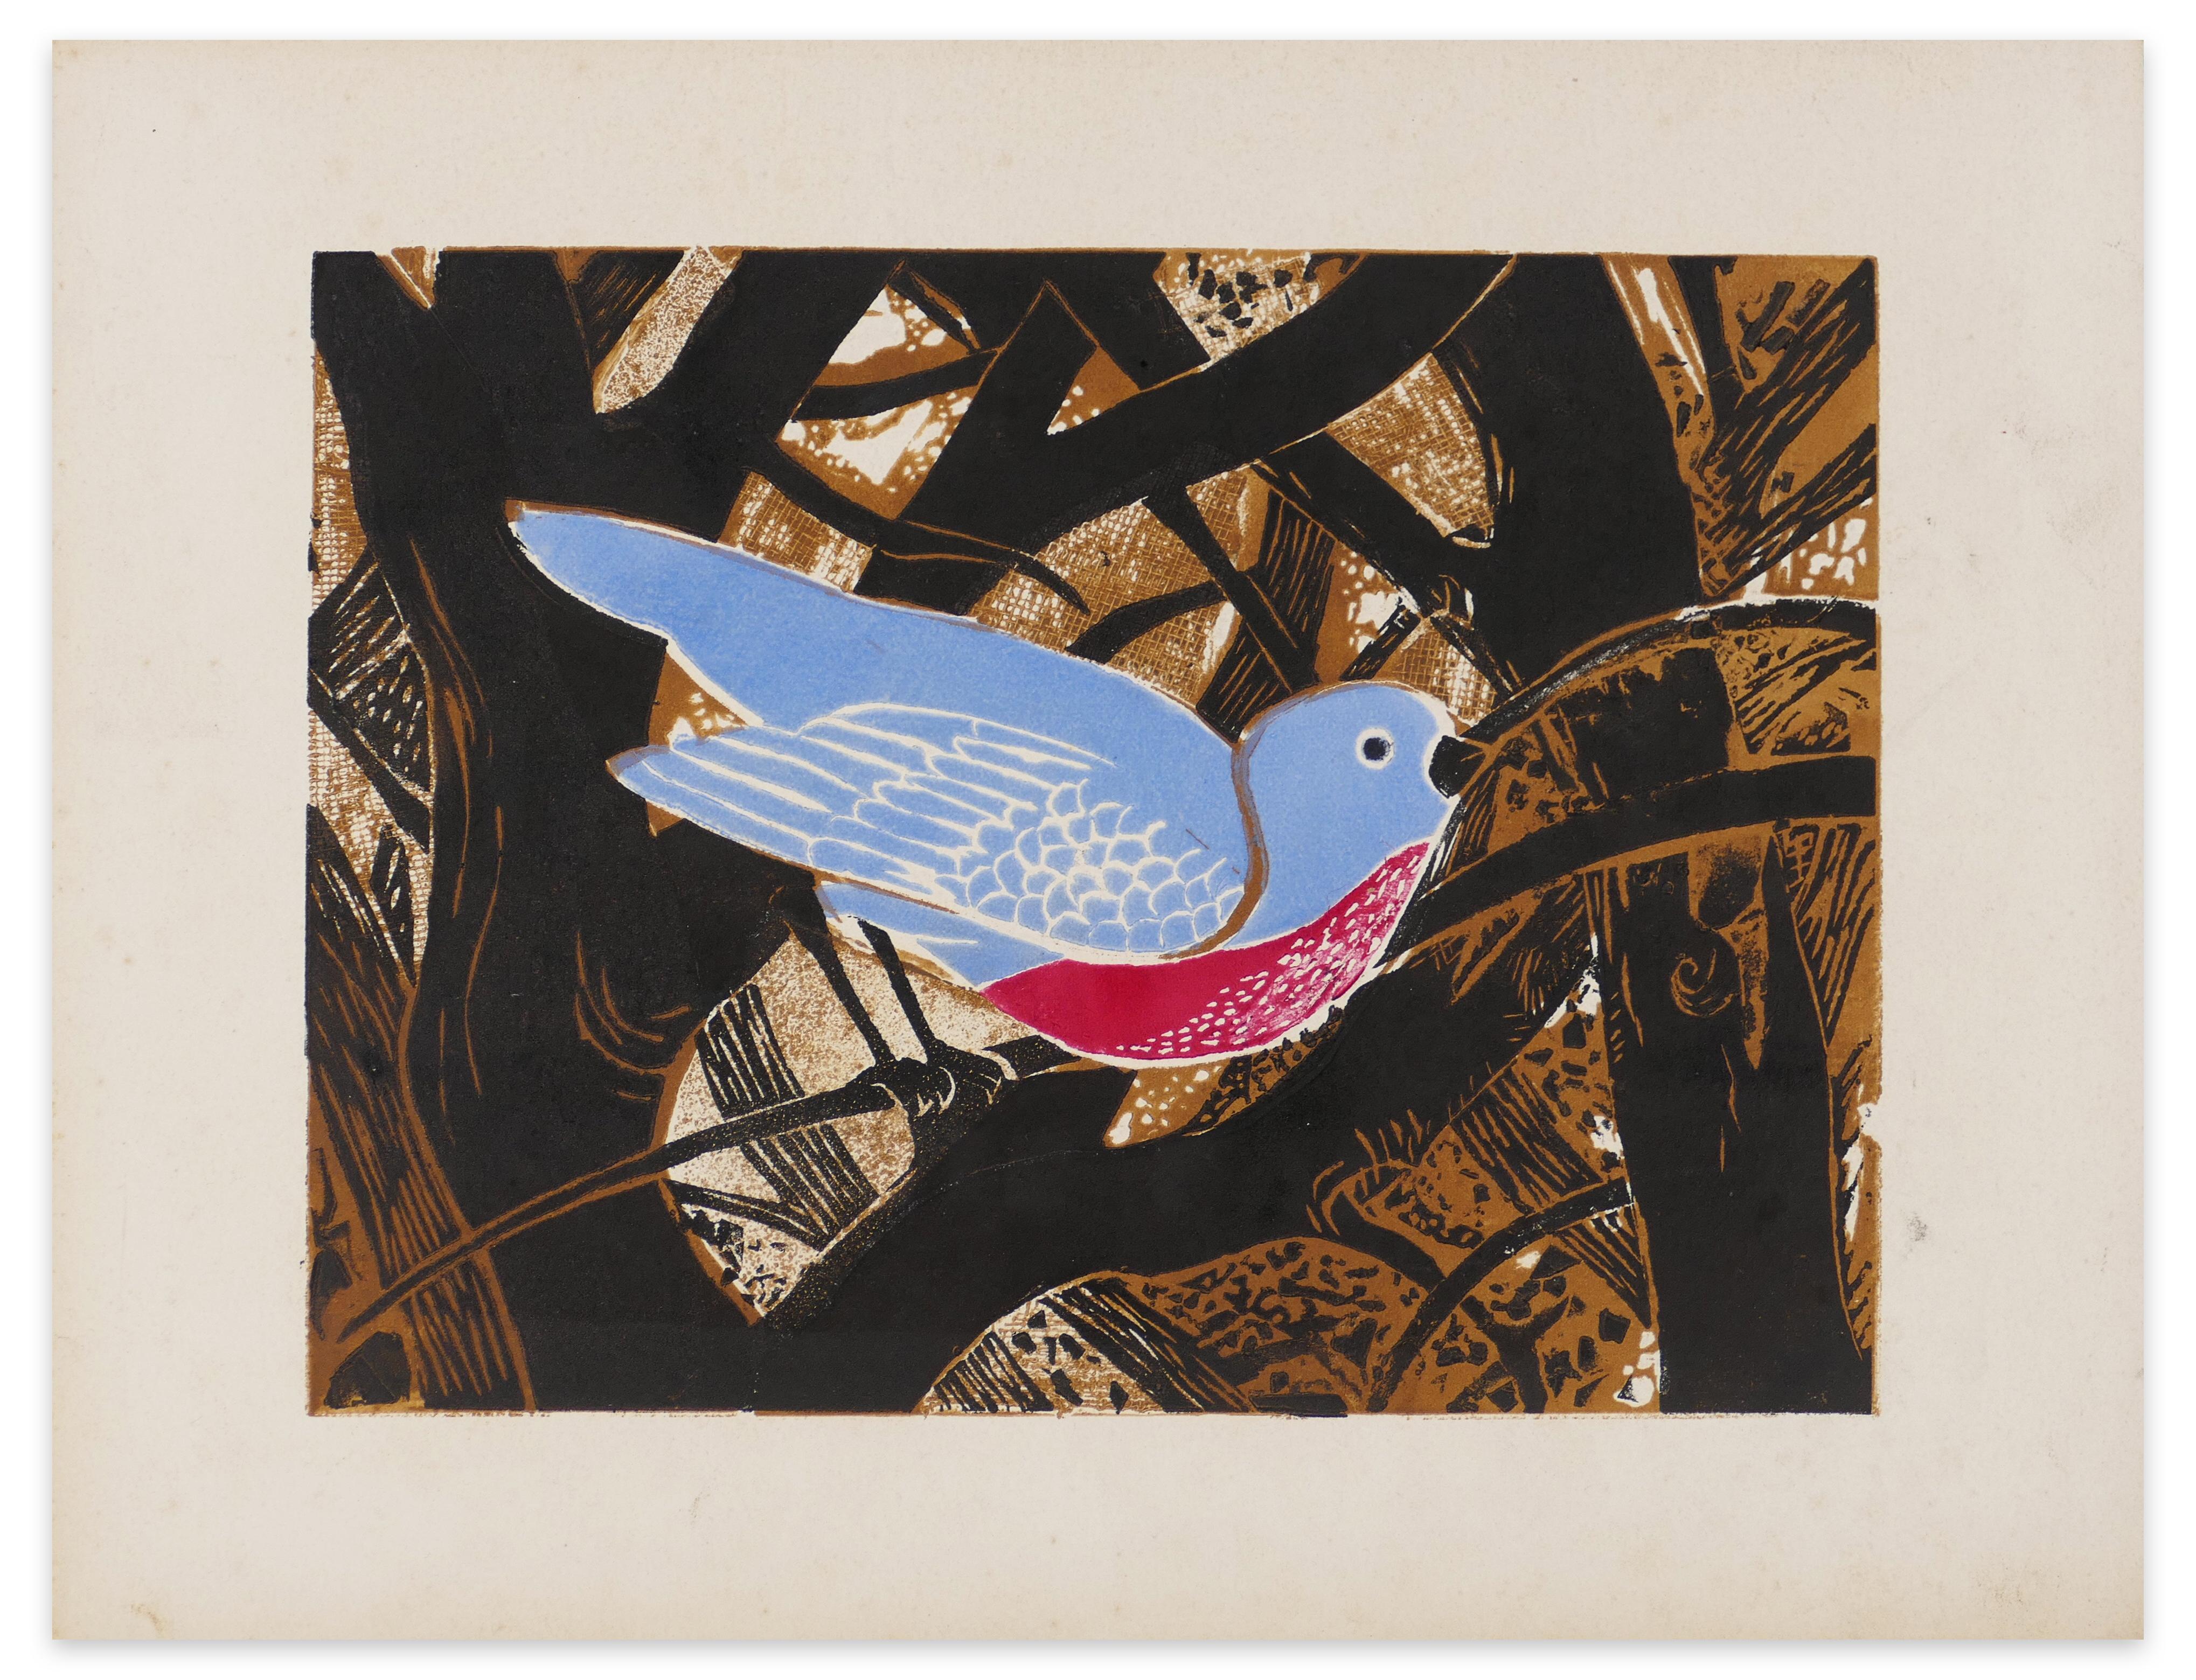 Oiseau Bleu - Impression sur bois par G. Halff - Fin 1900